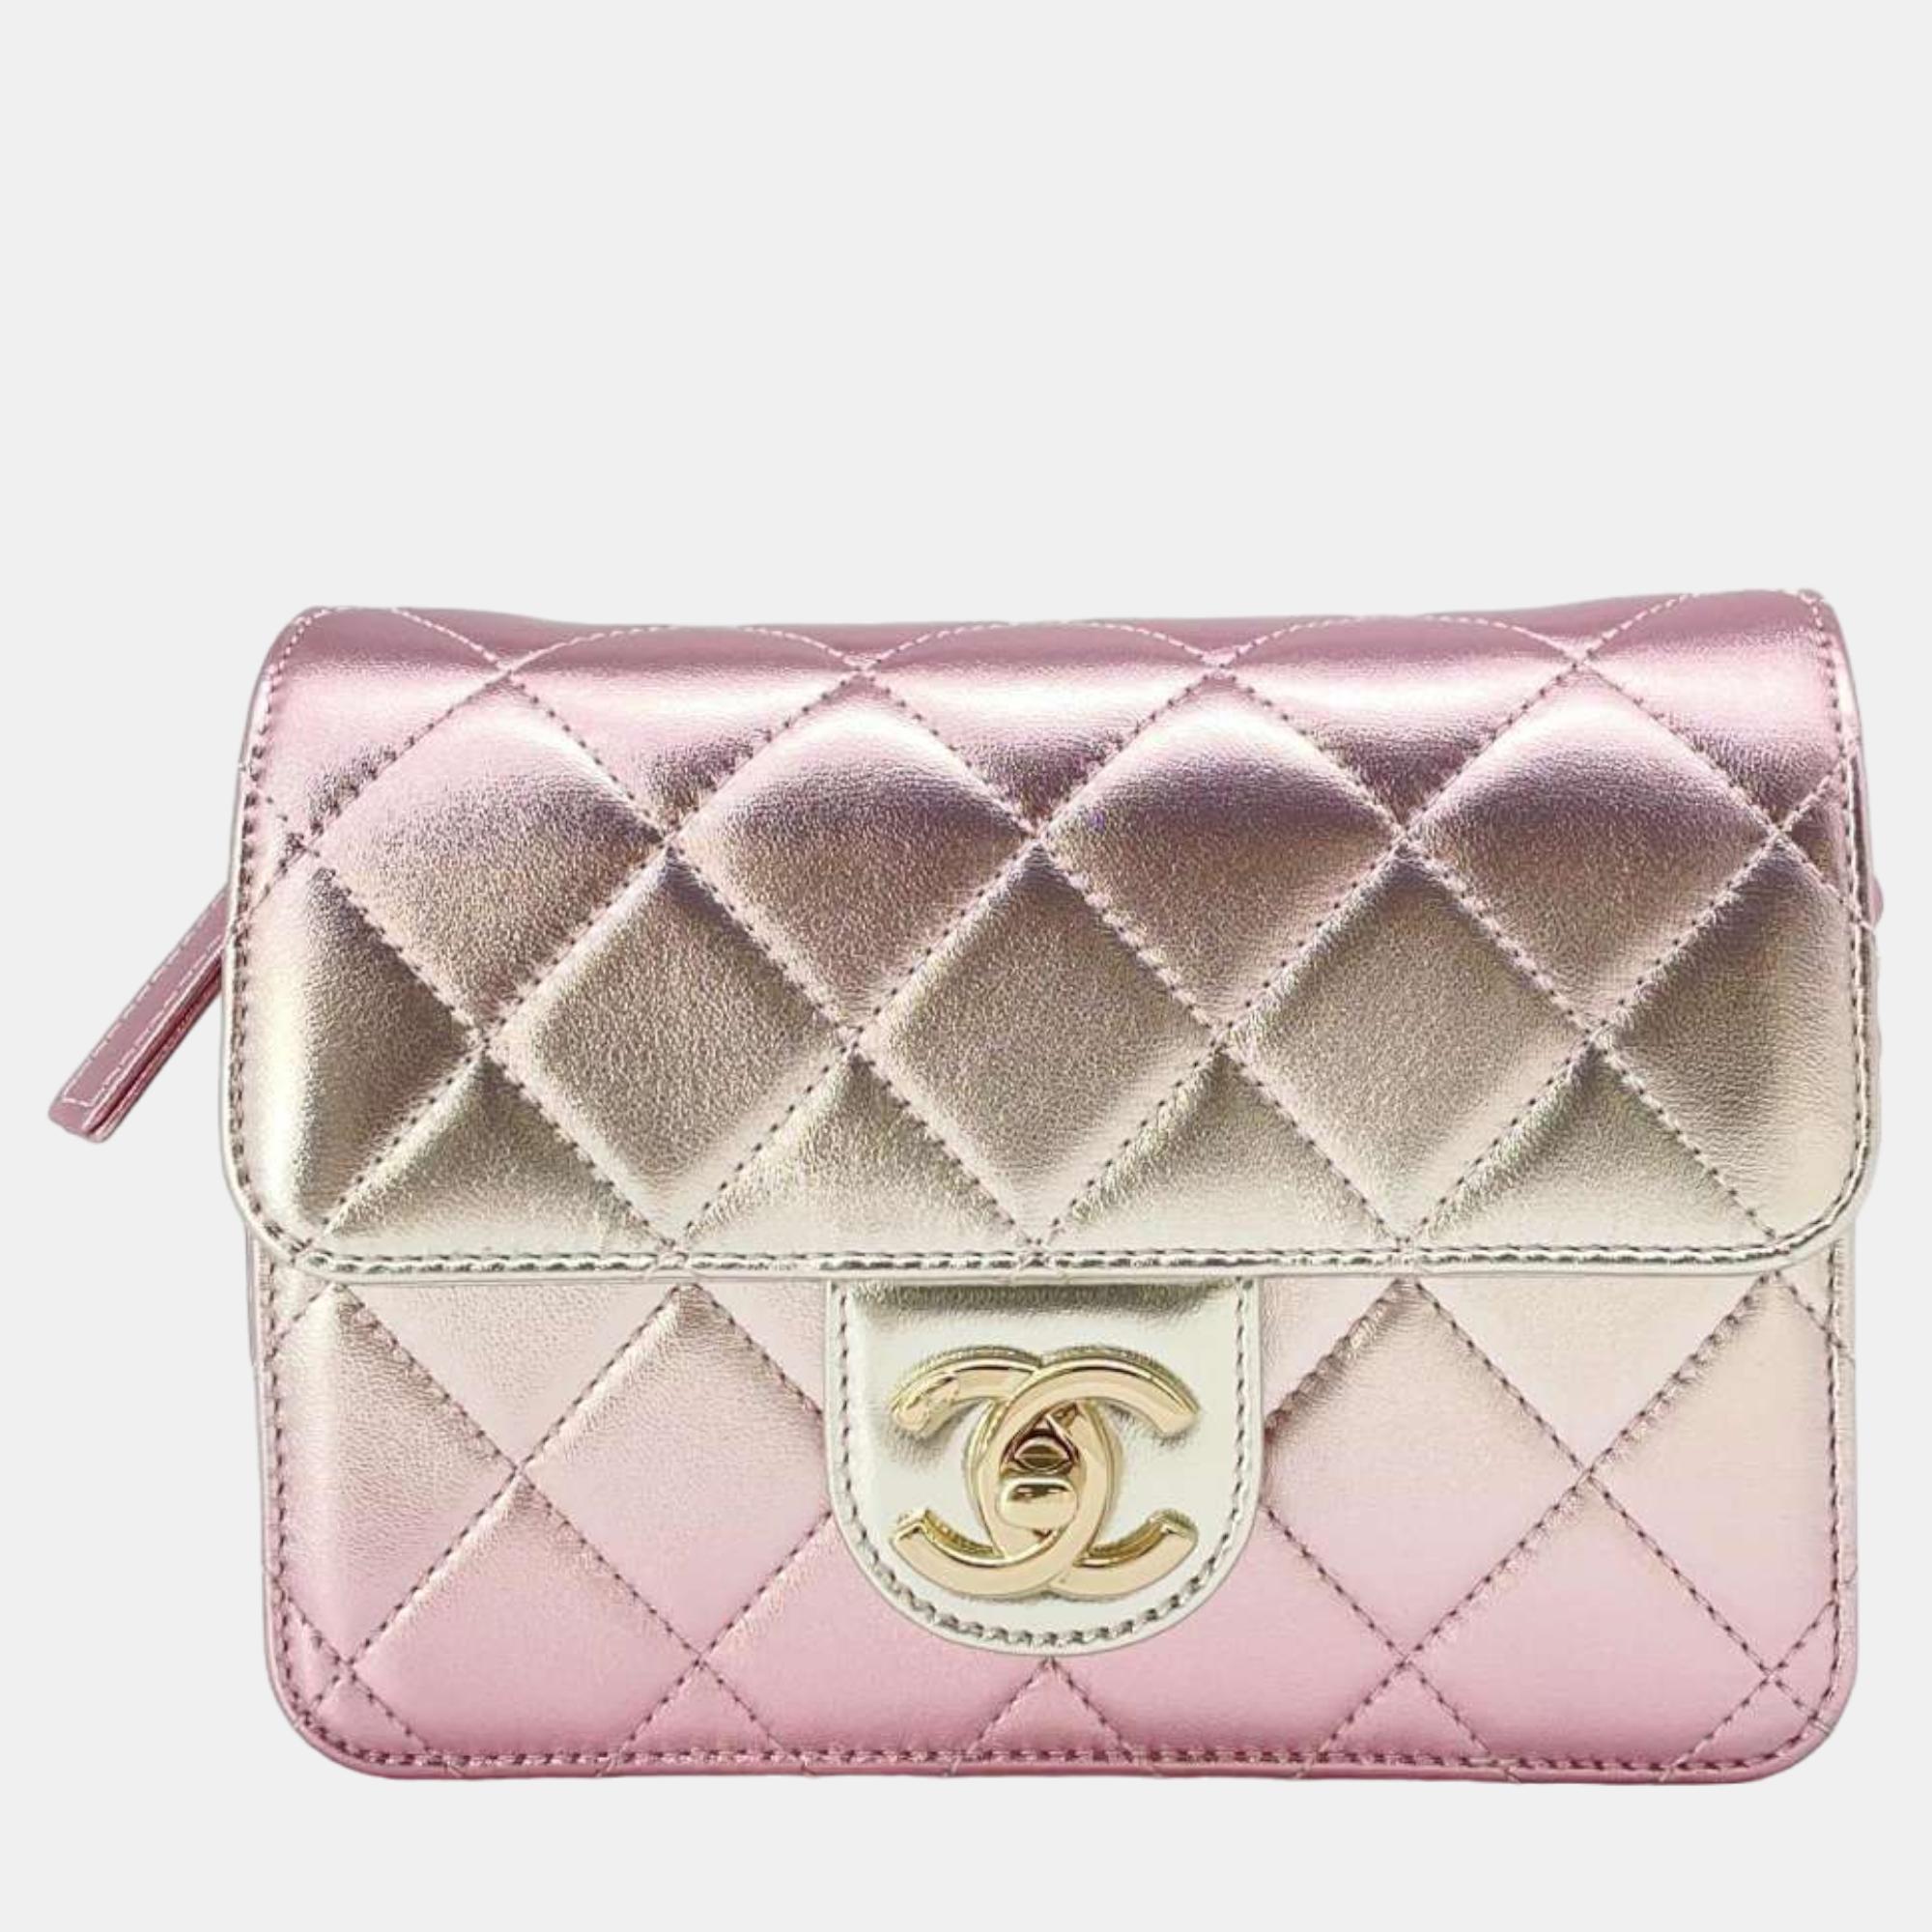 Chanel metalic pink lambskin leather mini flap bag